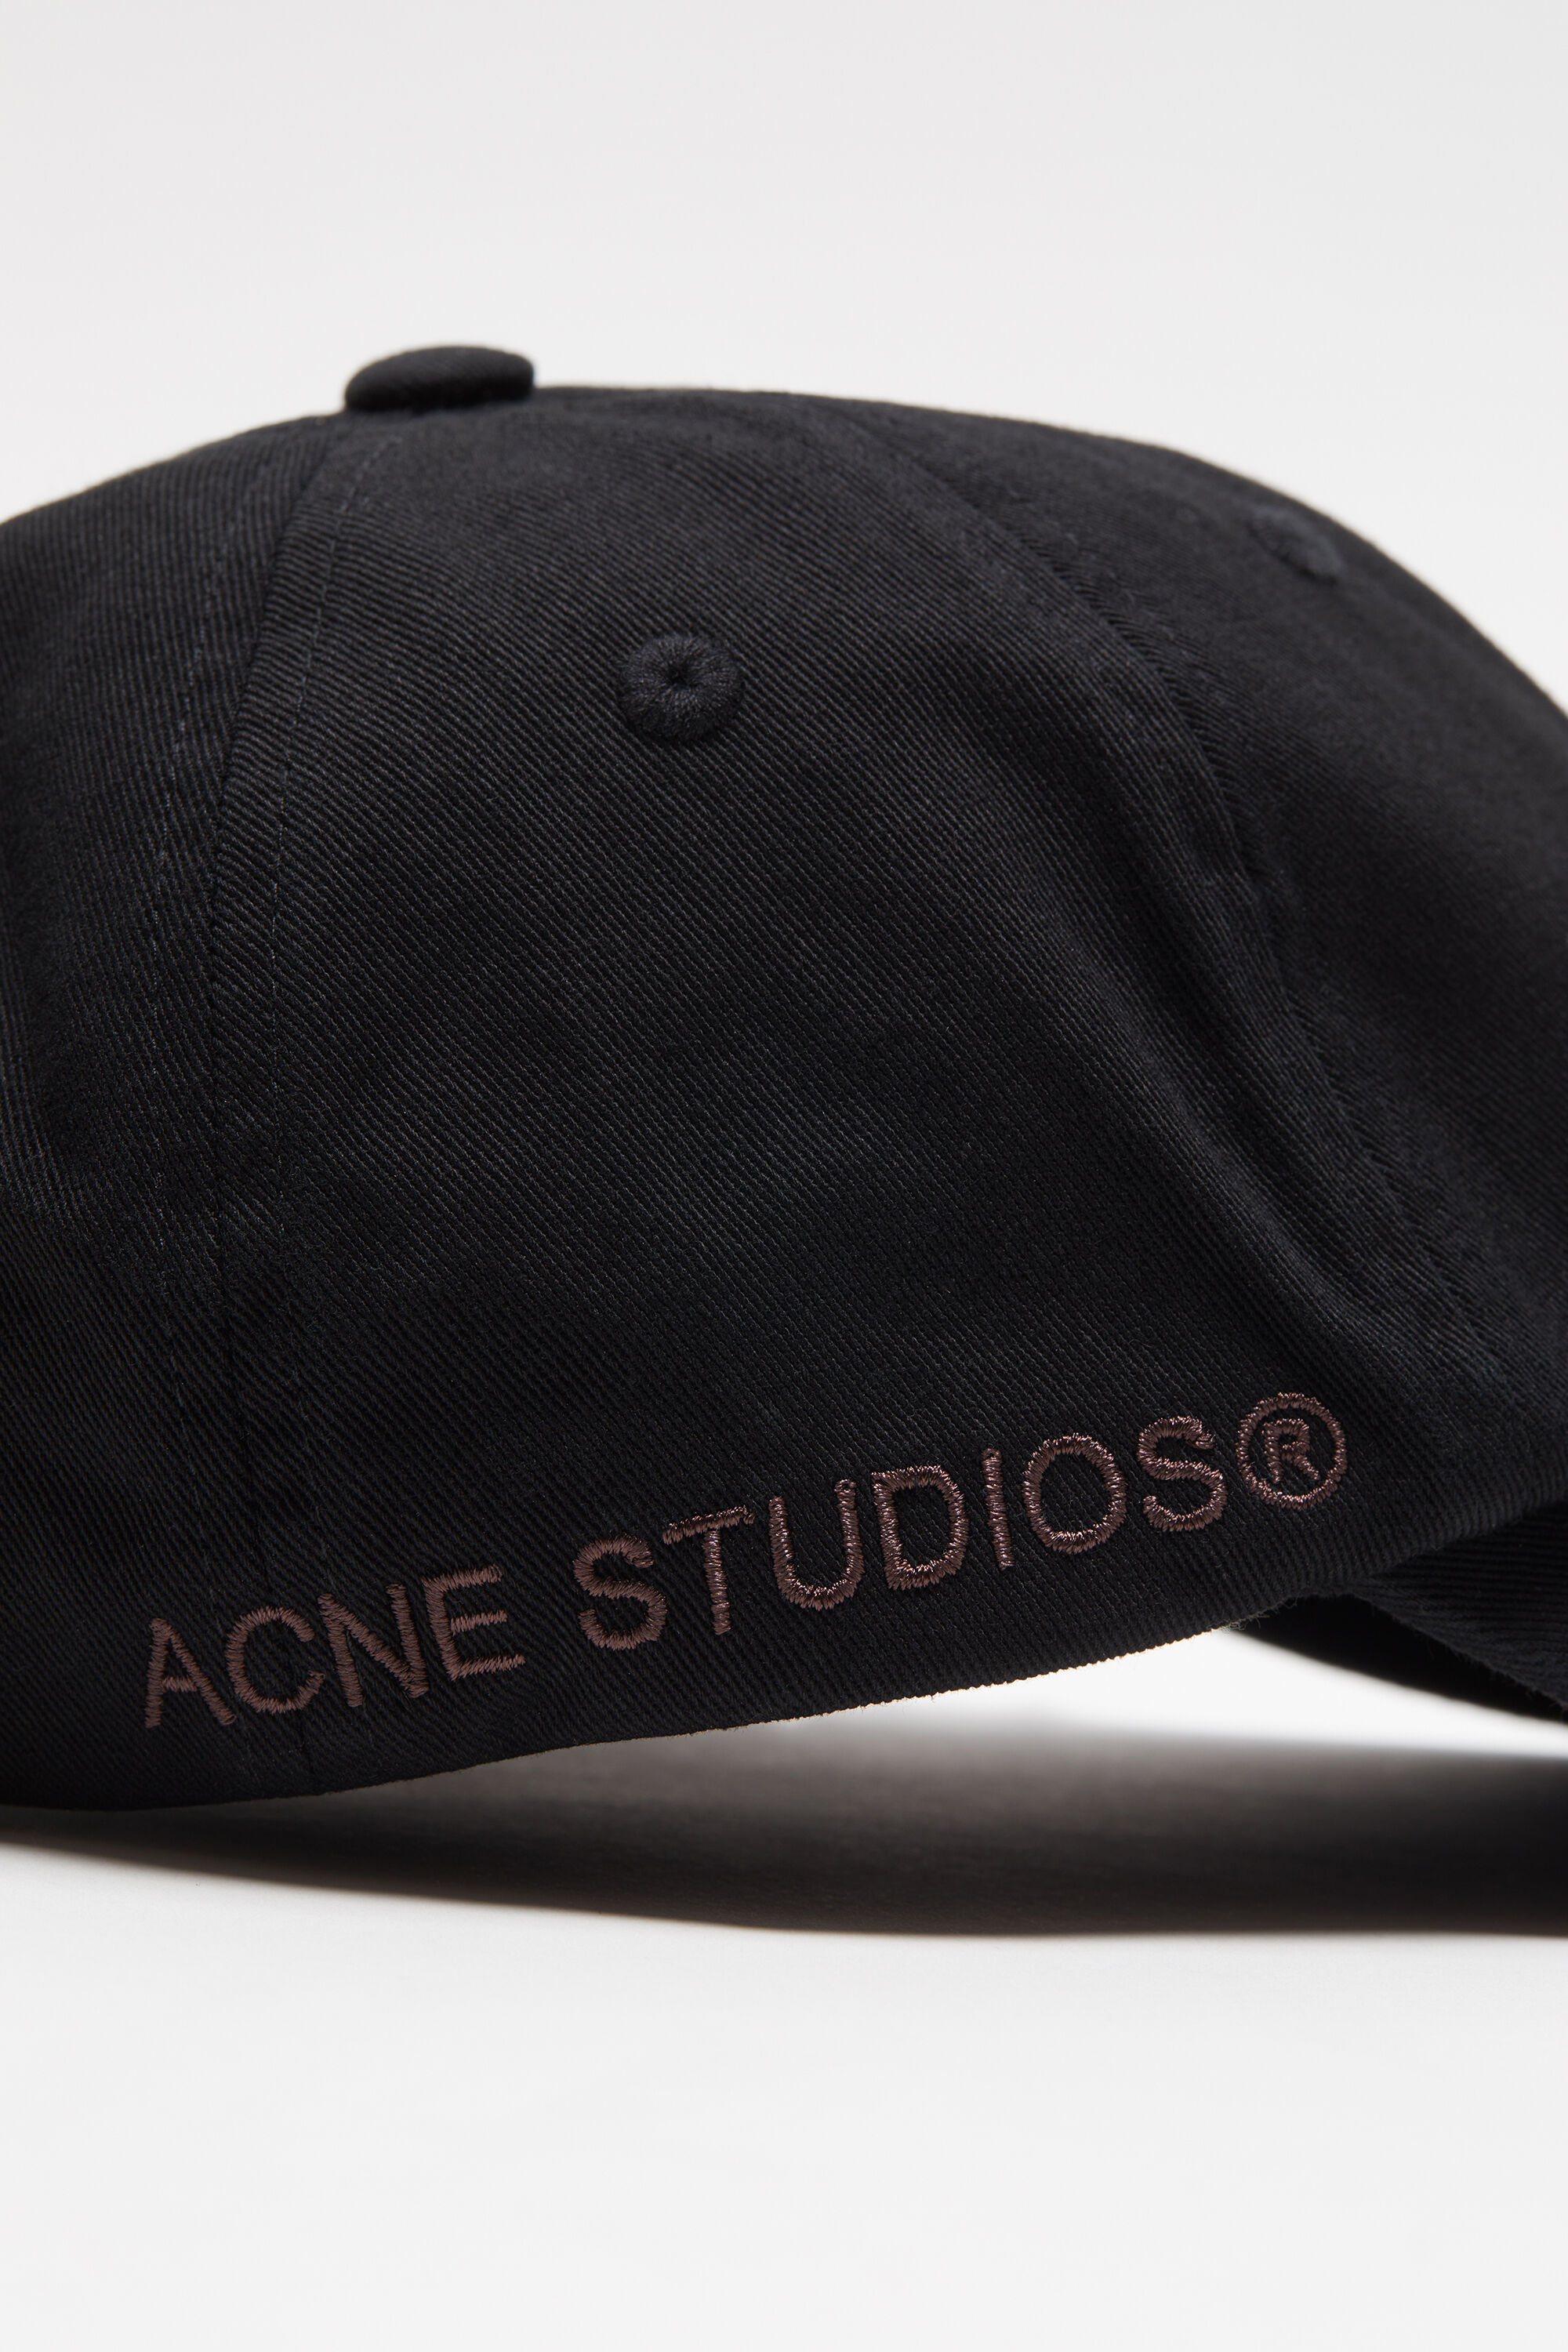 Acne Studios - コットン ベースボールキャップ - ブラック